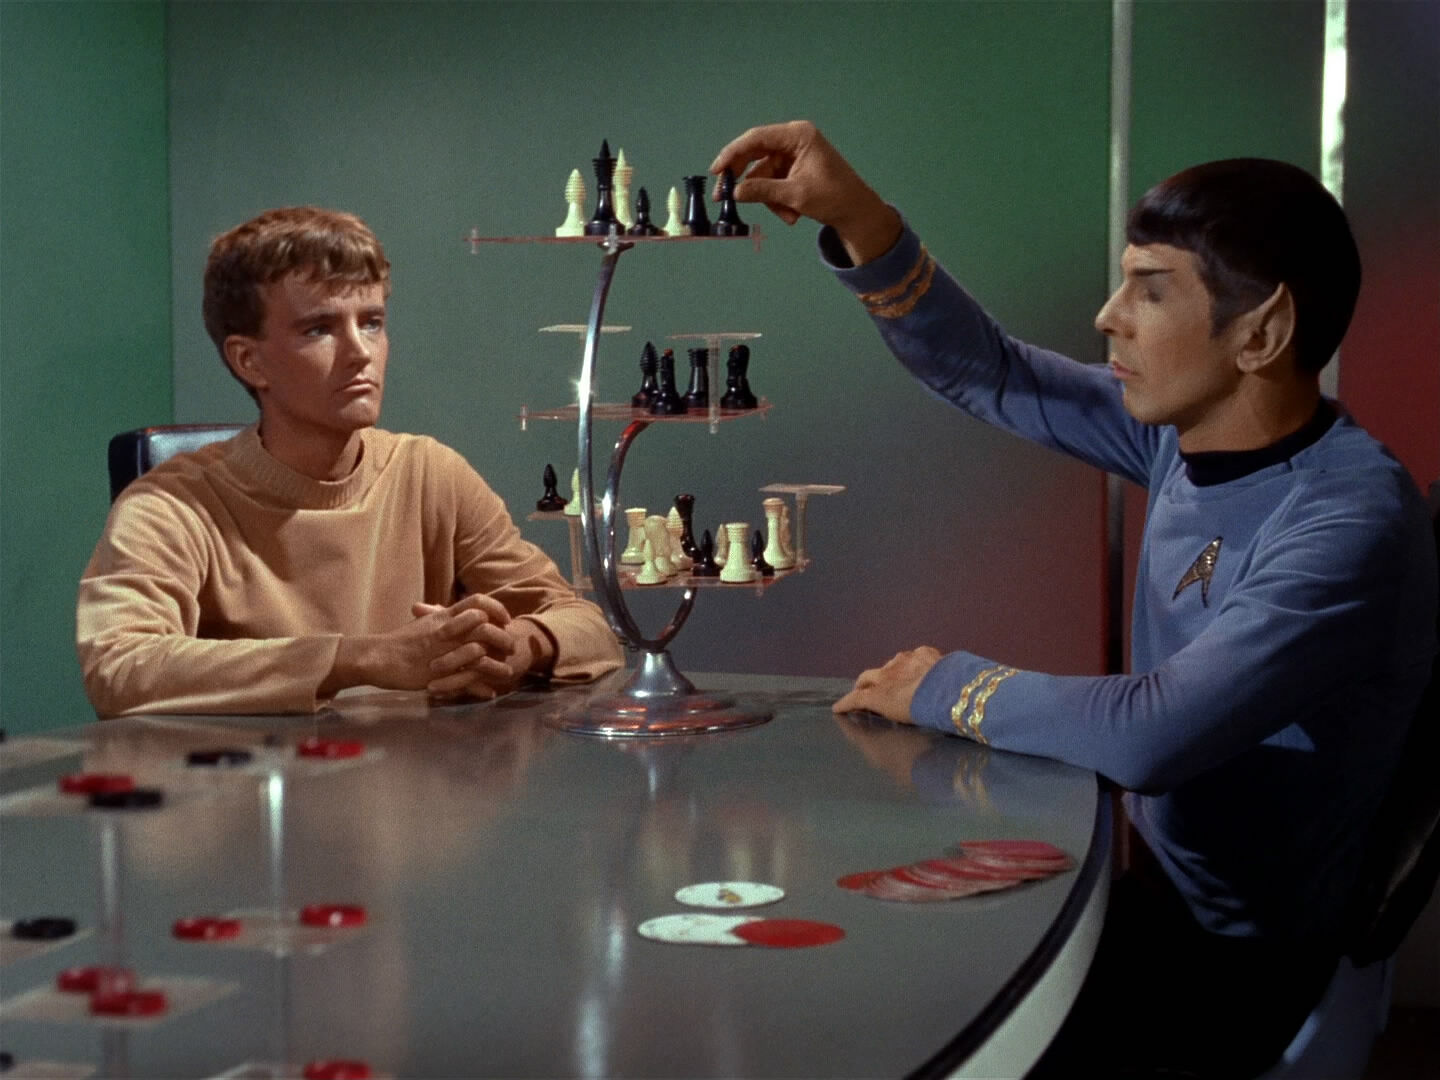 Star Trek On Chess 